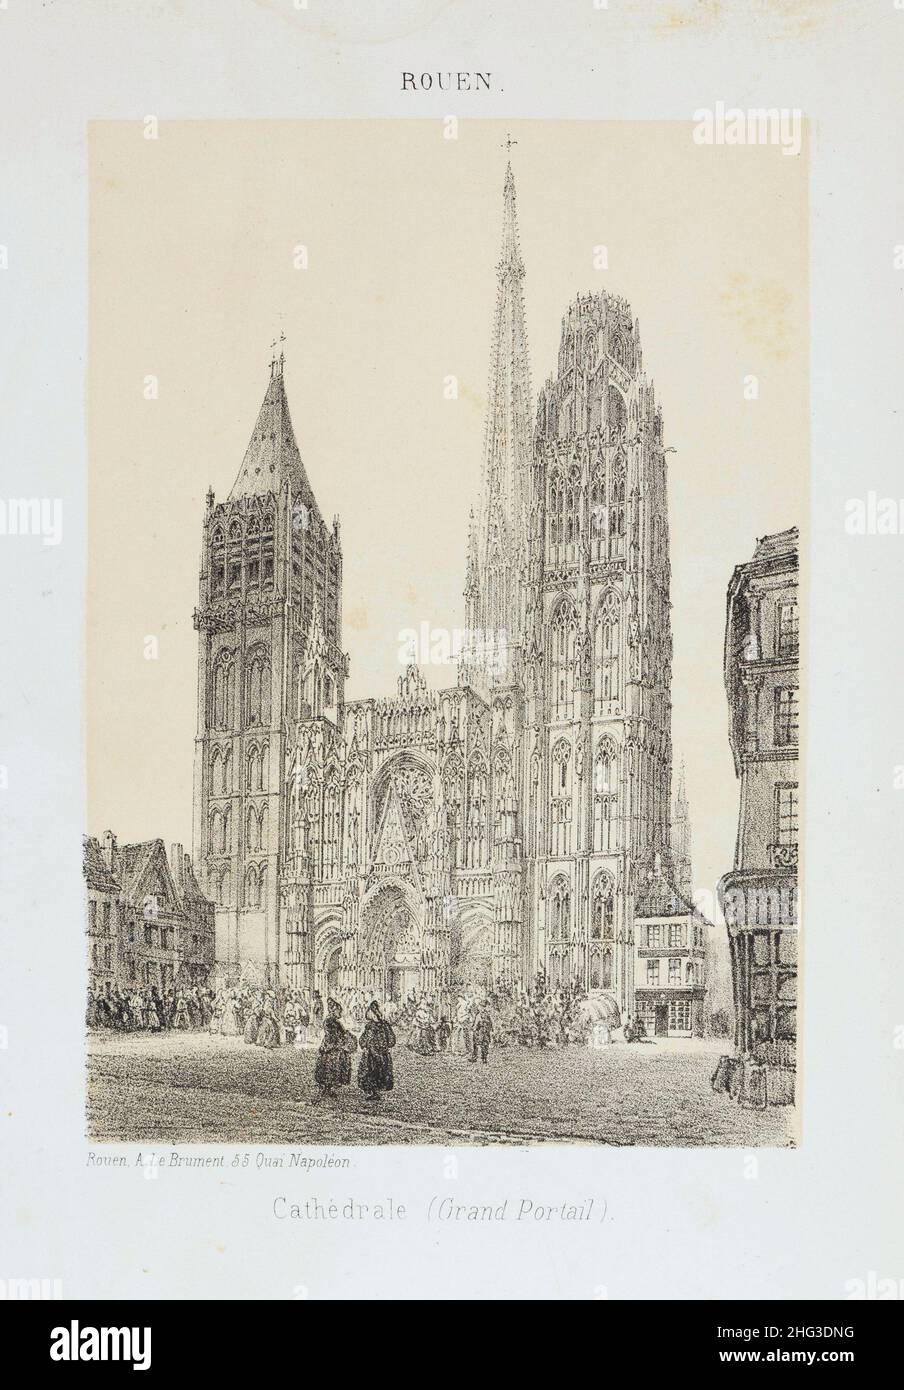 Litografía de la vista de la Catedral de Rouen. 1876-1877 La catedral de Rouen (en francés: Cathédrale primatiale Notre-Dame de l'Assomption de Rouen) es una ca romana Foto de stock